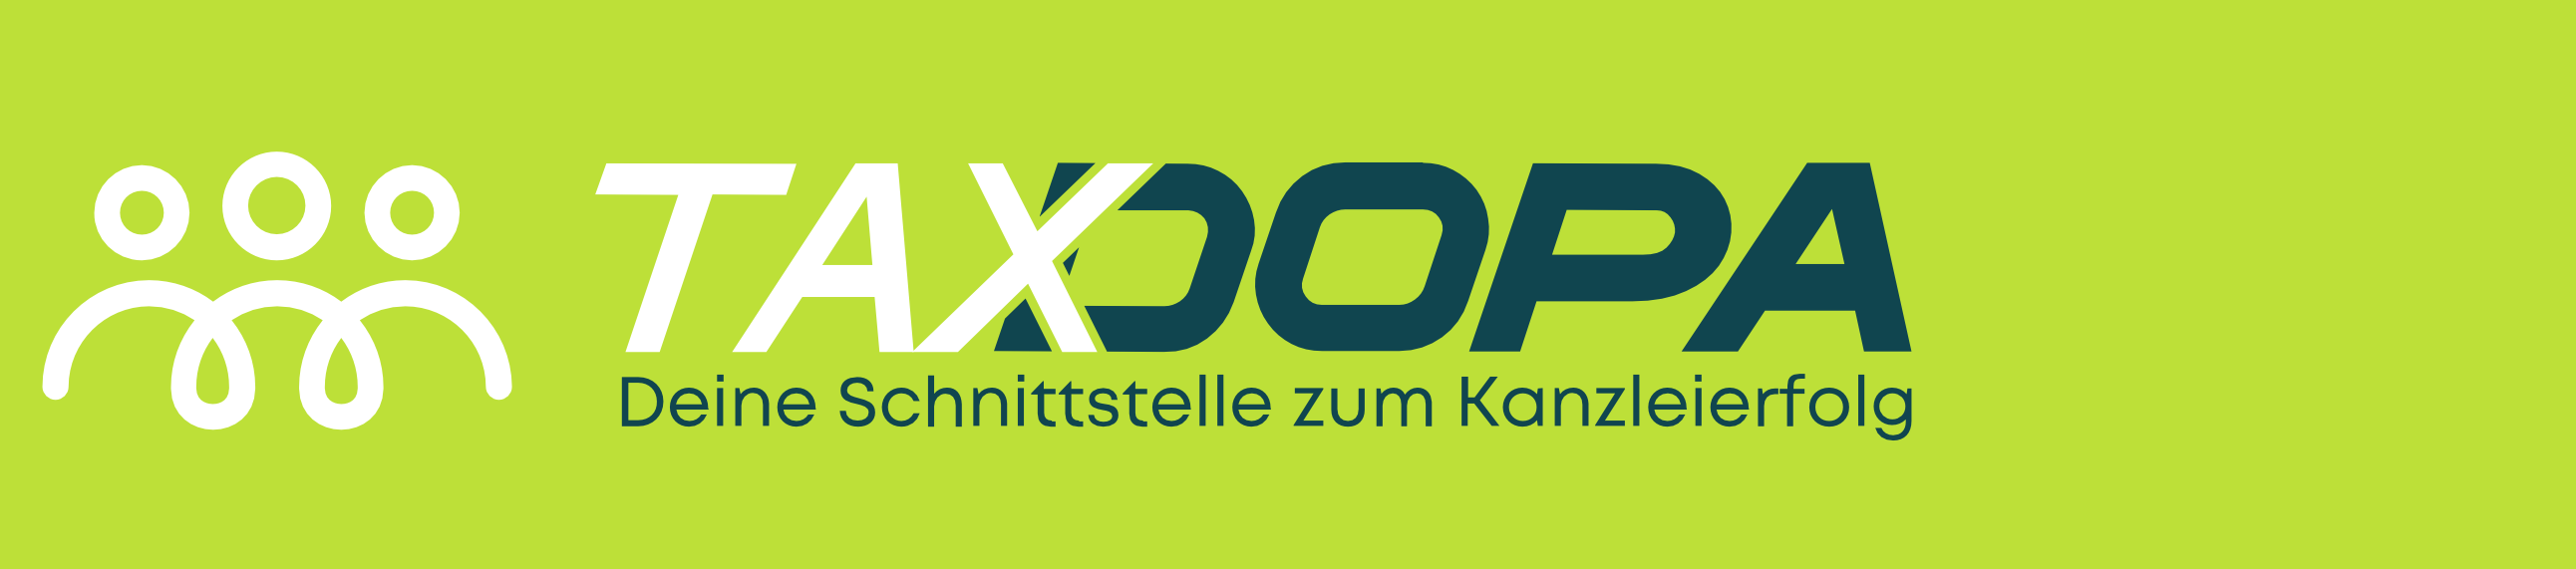 Logo_weiß_auf grün_web